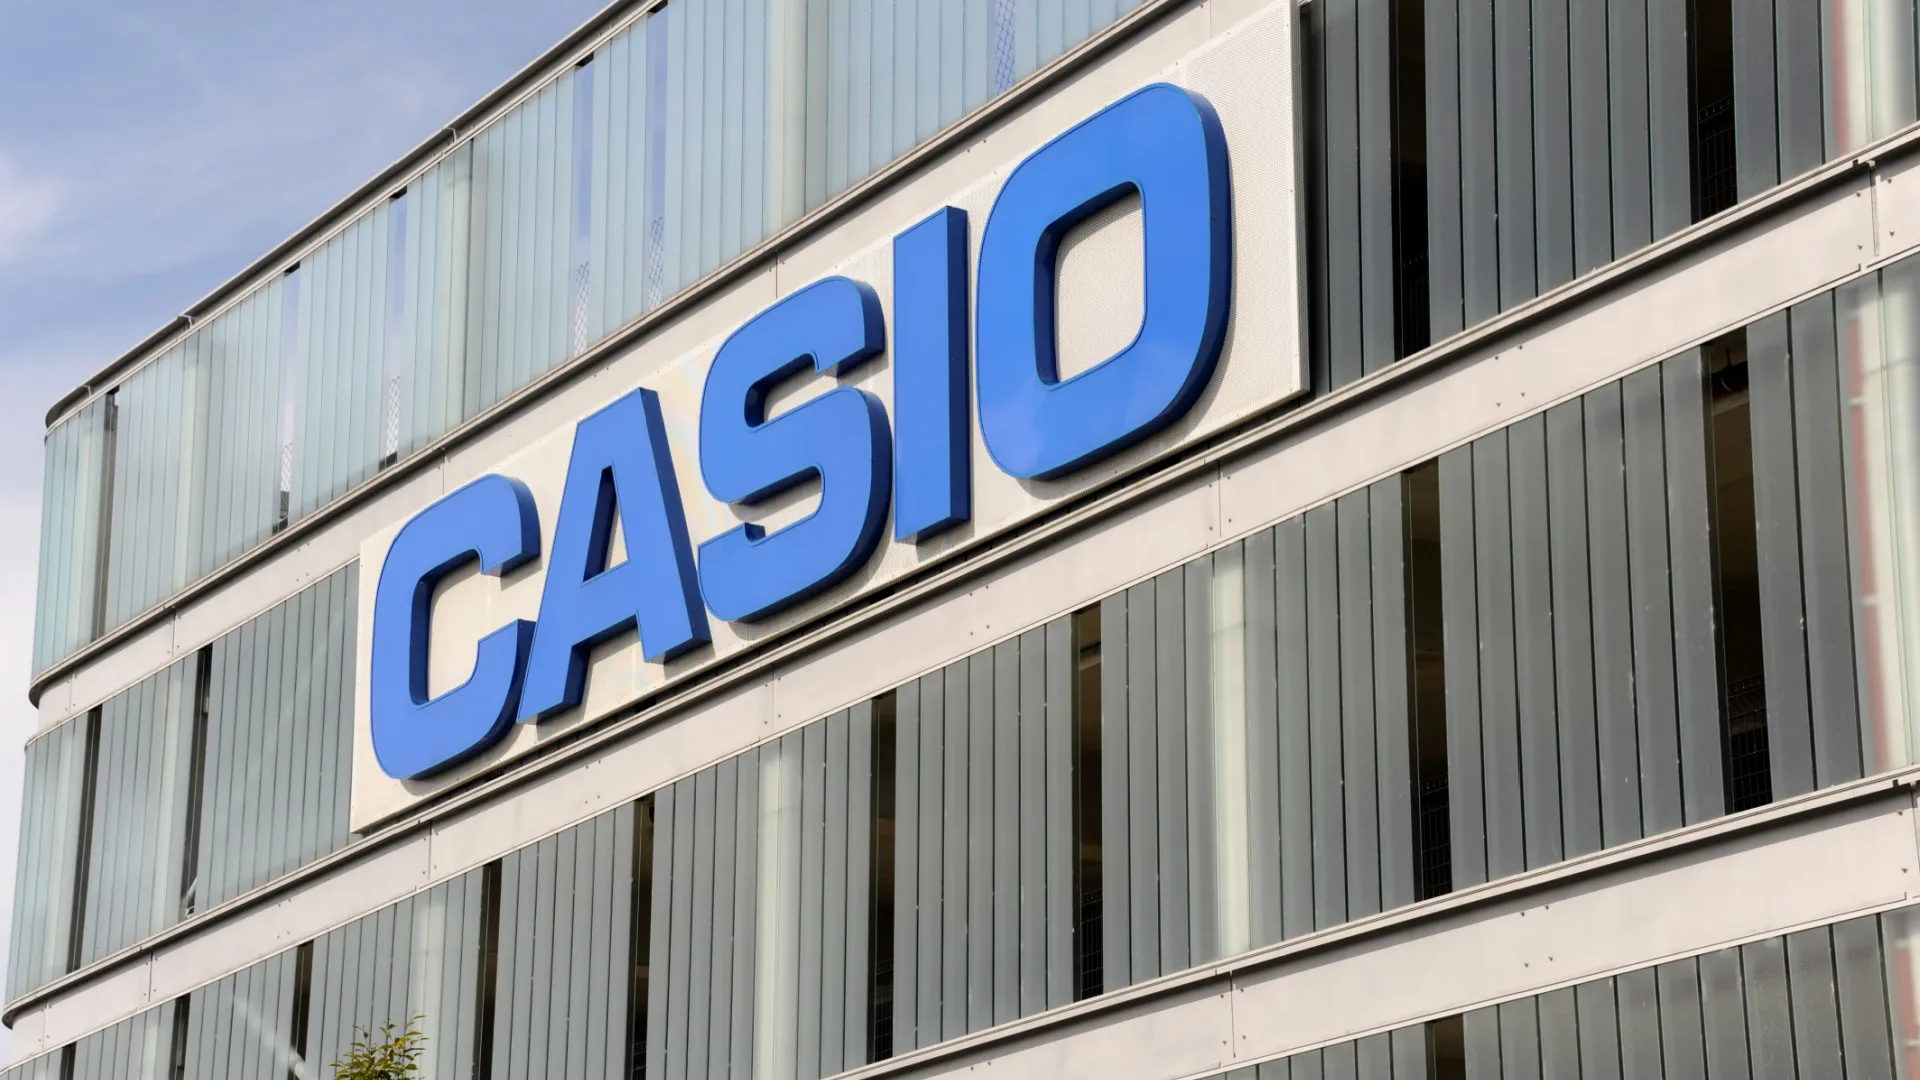 Anche a Casio sono stati rubati i dati dei suoi utenti!